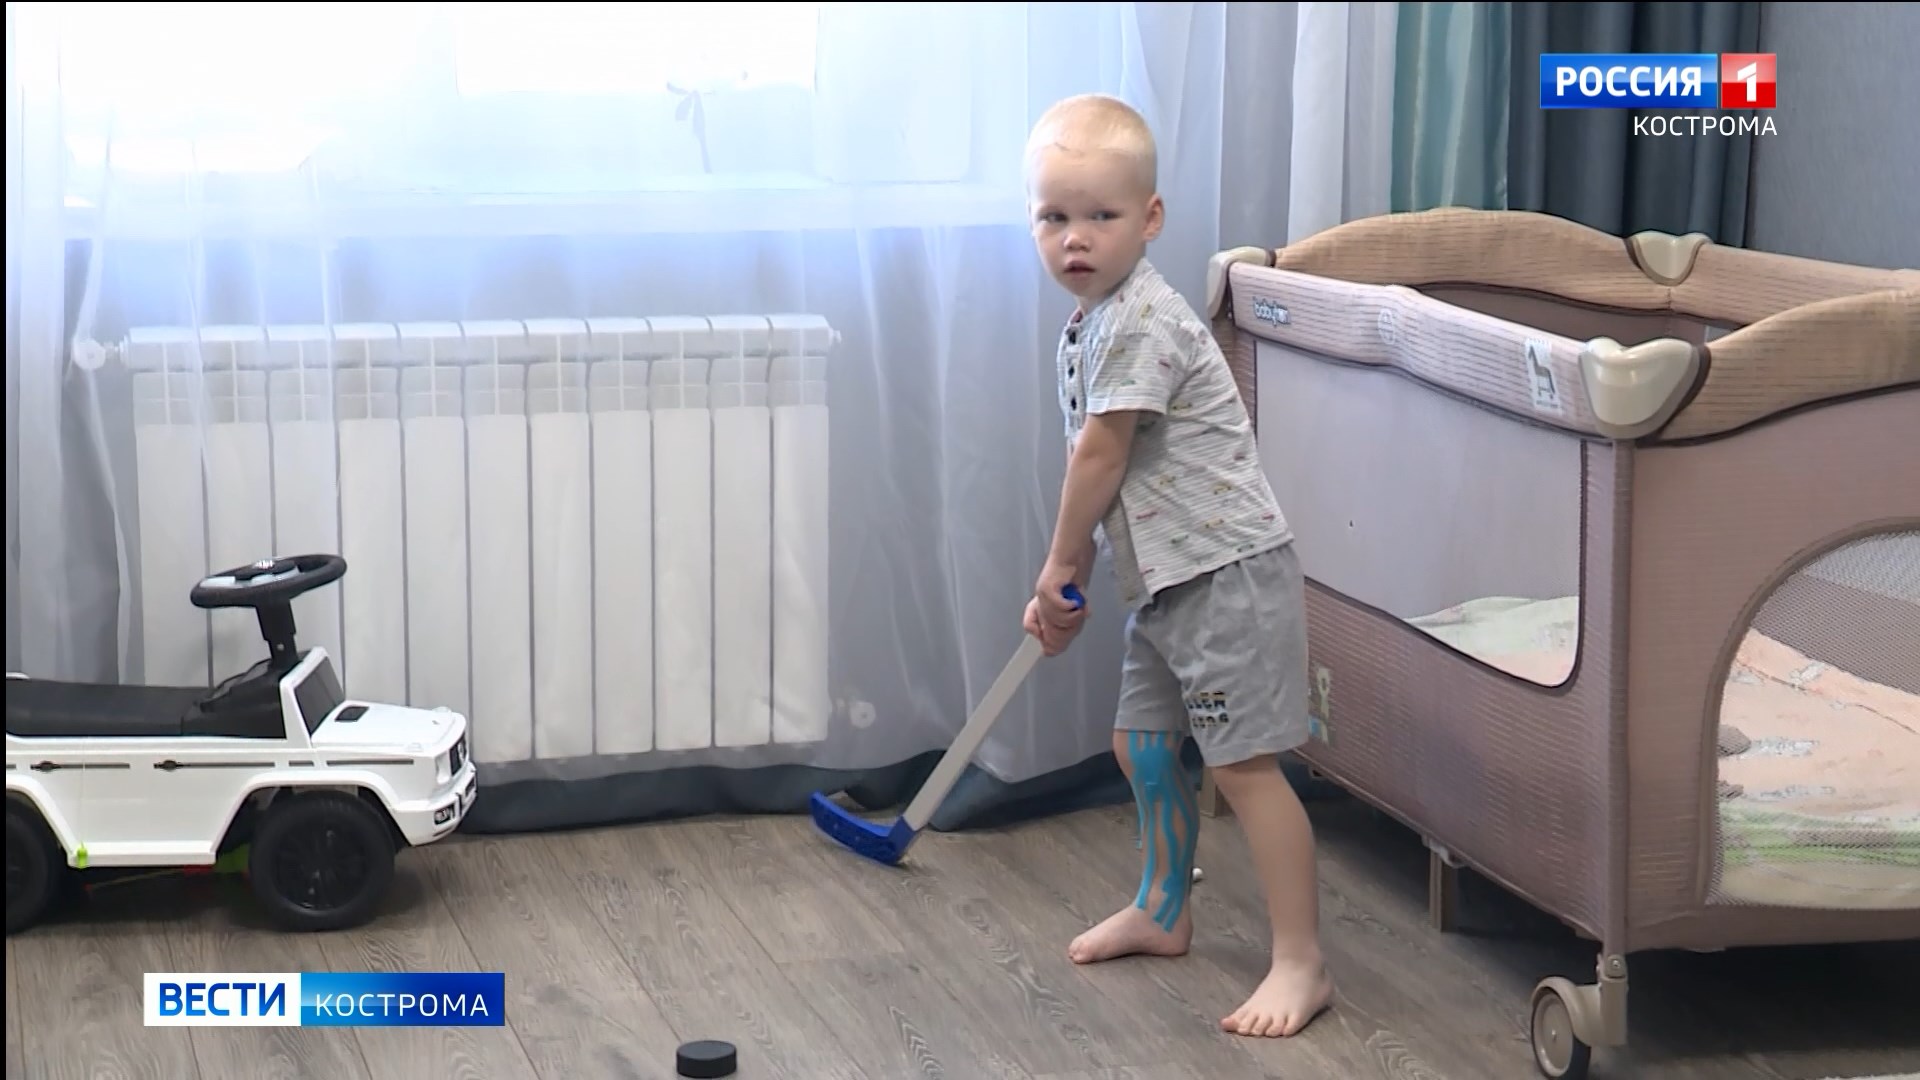 «Русфонд» и костромичи могут помочь 3-летнему мальчику вновь крепко стоять на ногах